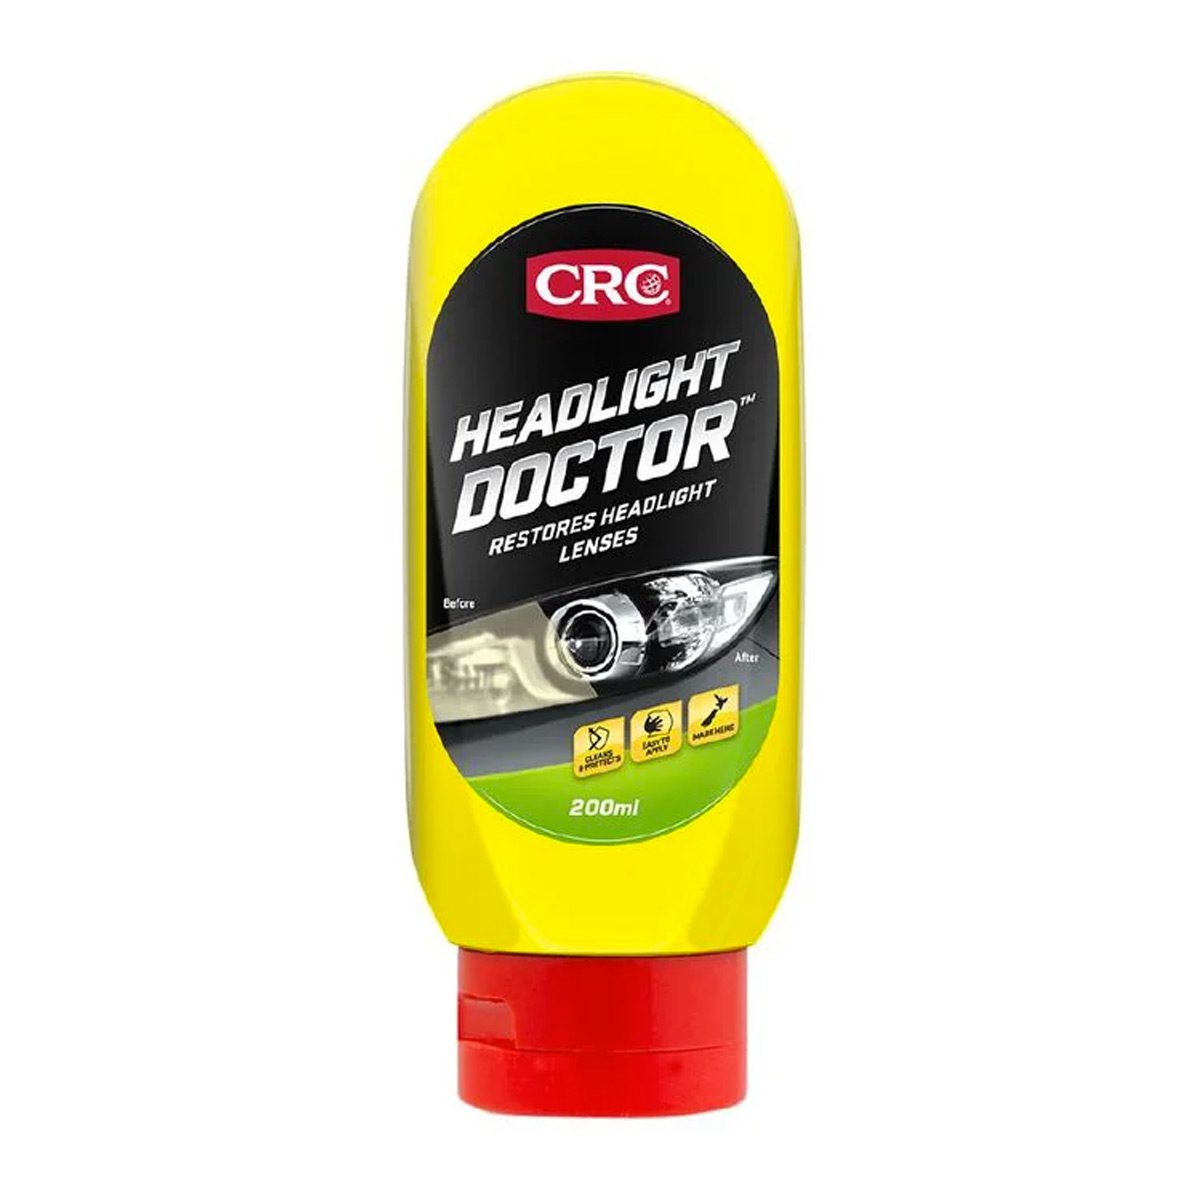 automotive-crc-headlight-doctor-restores-headlight-lenses-200ml-vjs-distributors-C9230